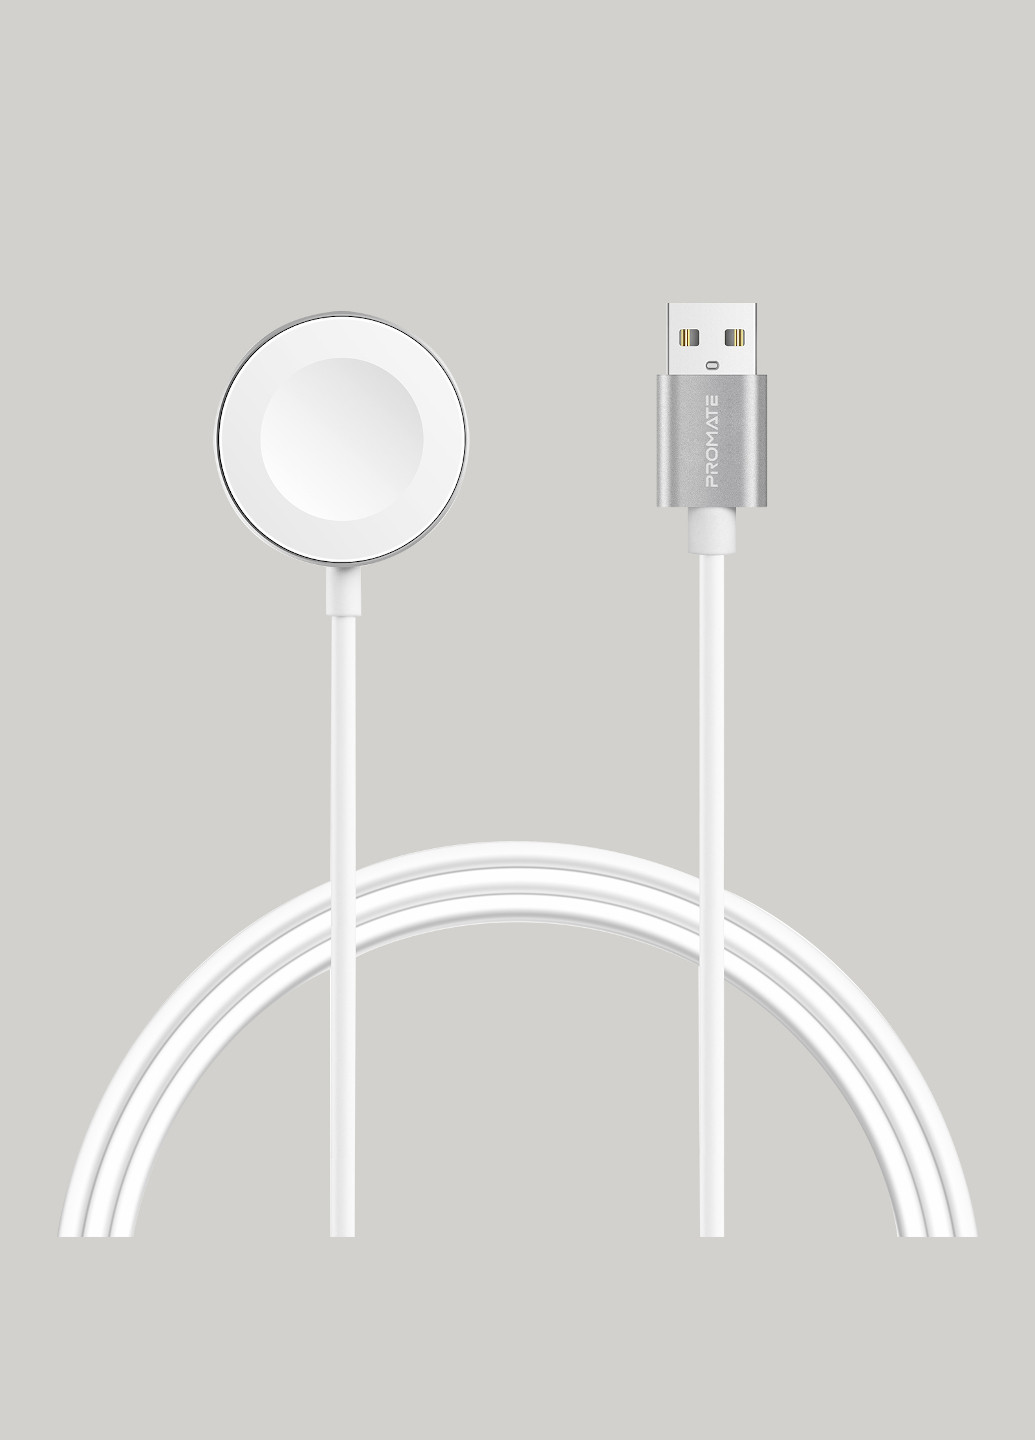 Кабель AuraCord-A USB Type-A для зарядки Apple Watch с MFI 1 м White Promate auracord-a.white (185445536)